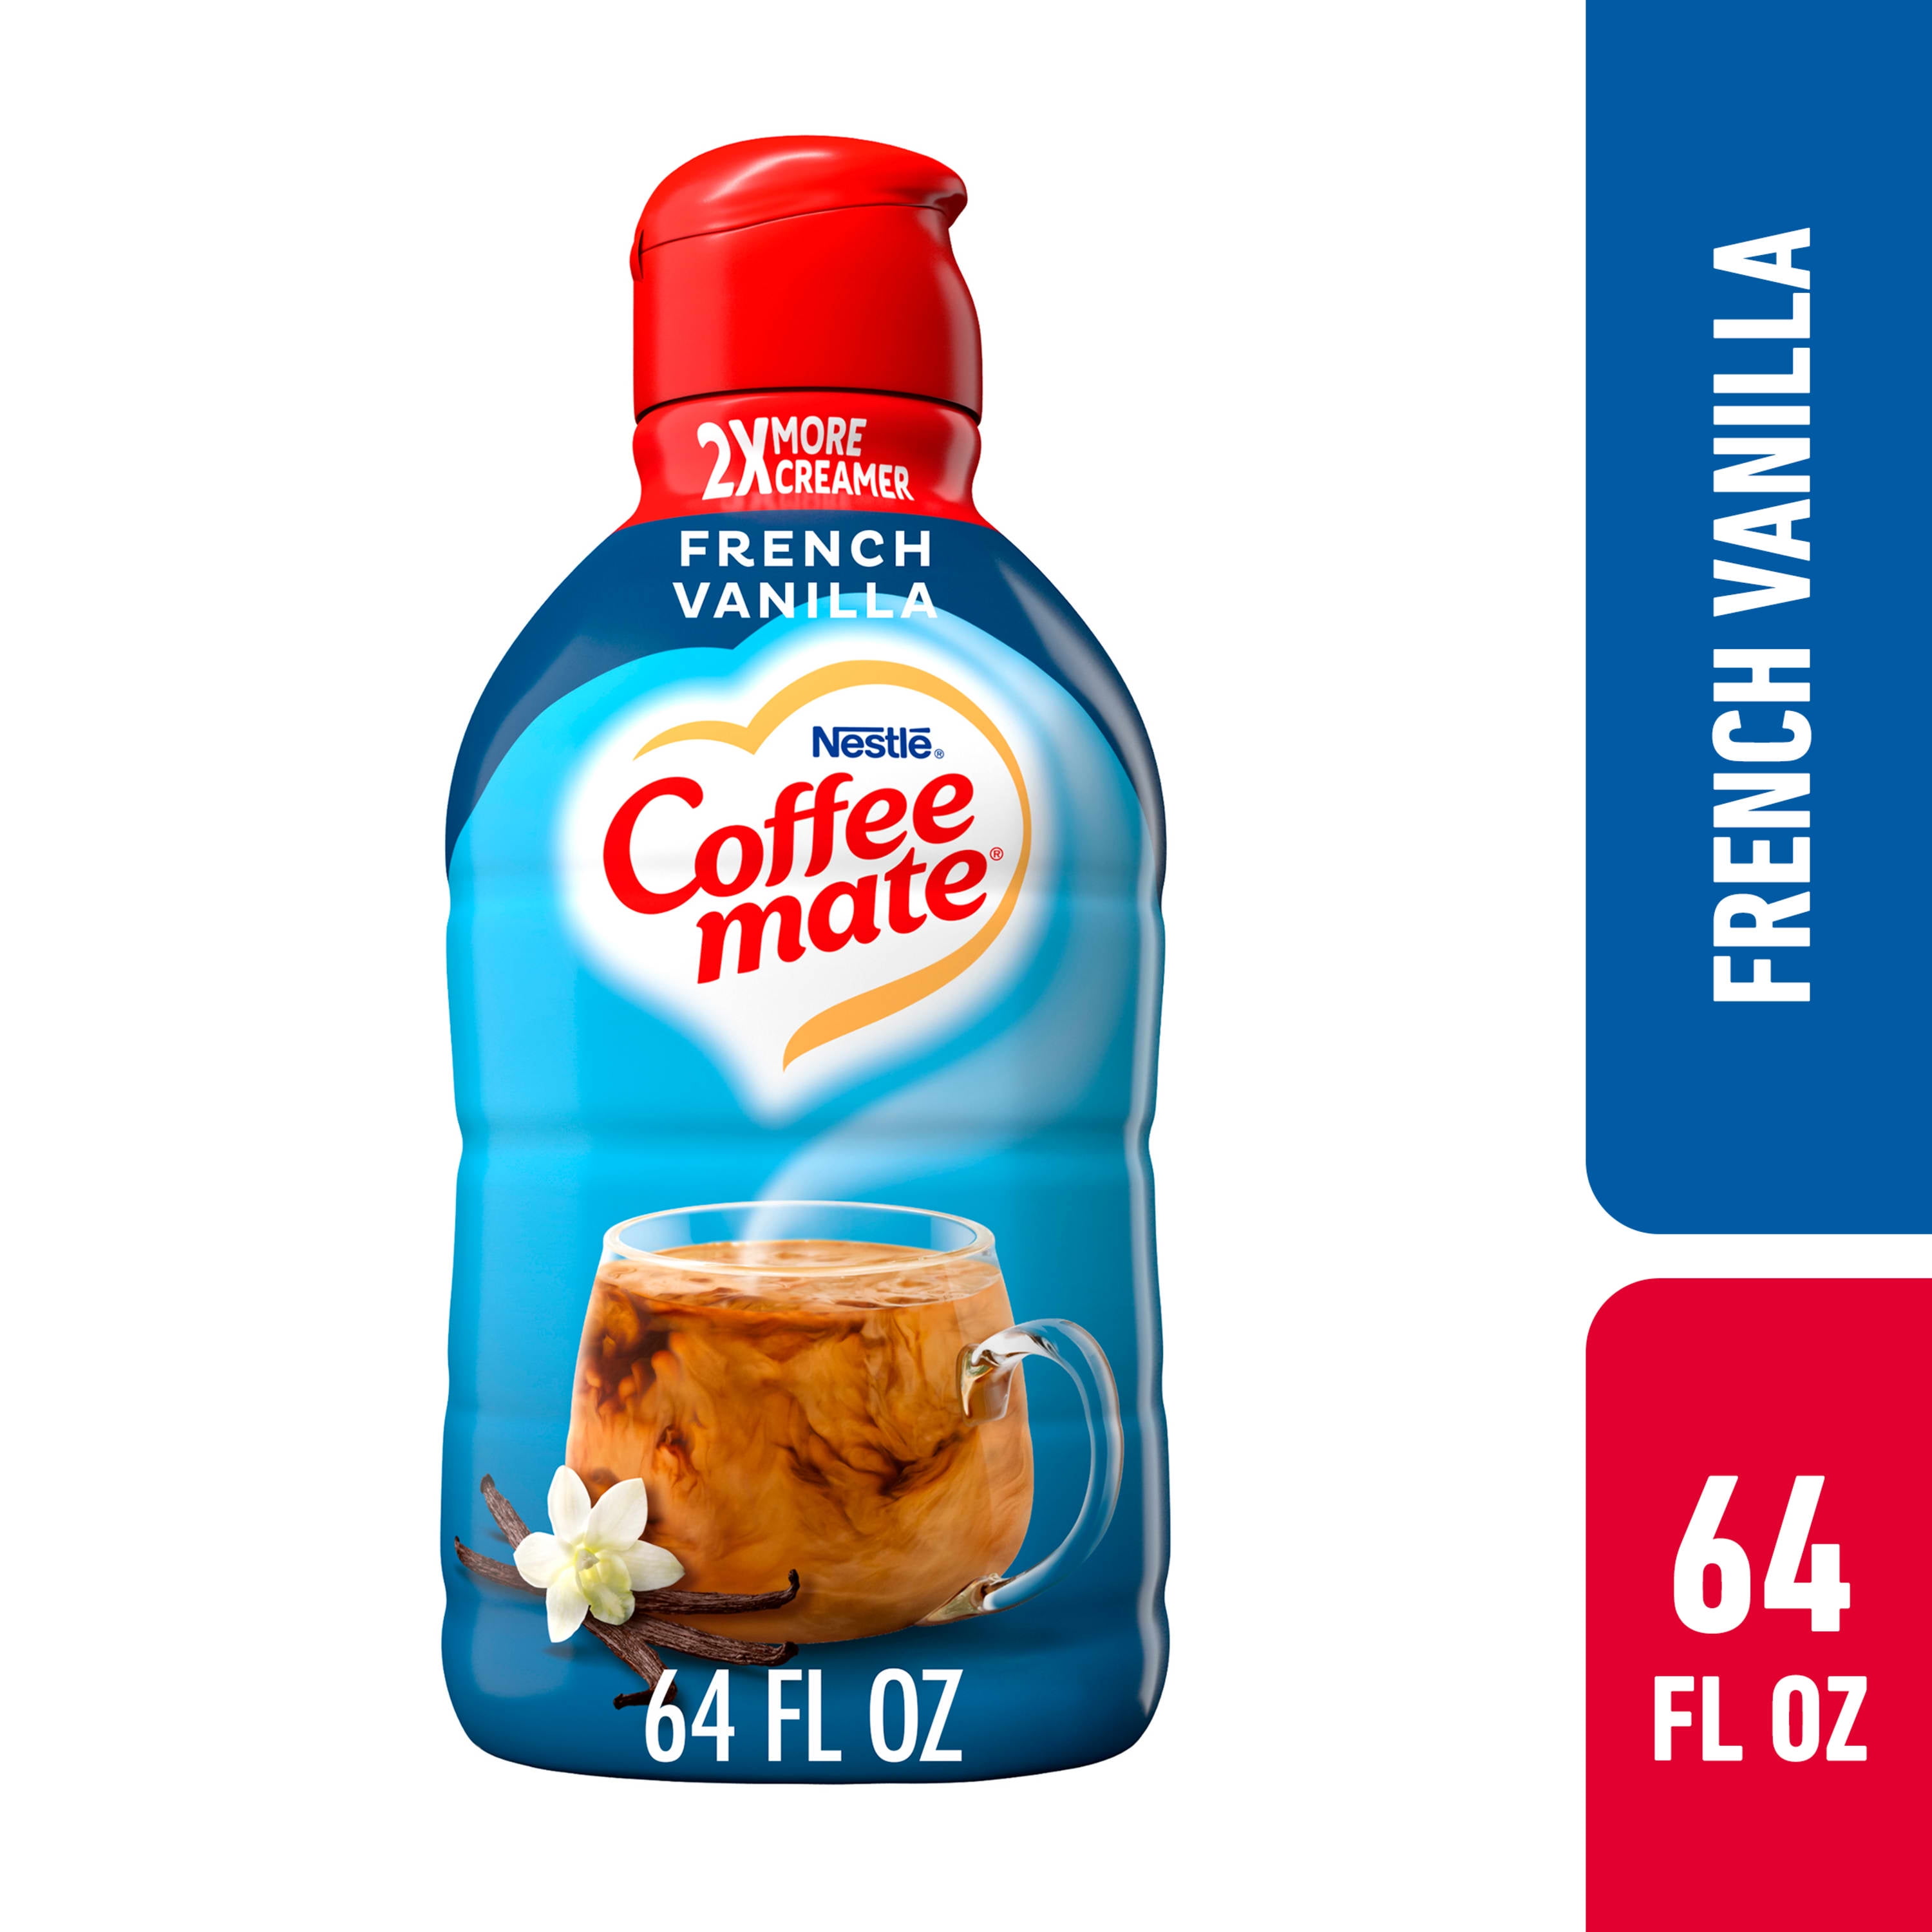 Nestle Coffee mate French Vanilla Liquid Coffee Creamer, 64 fl oz 